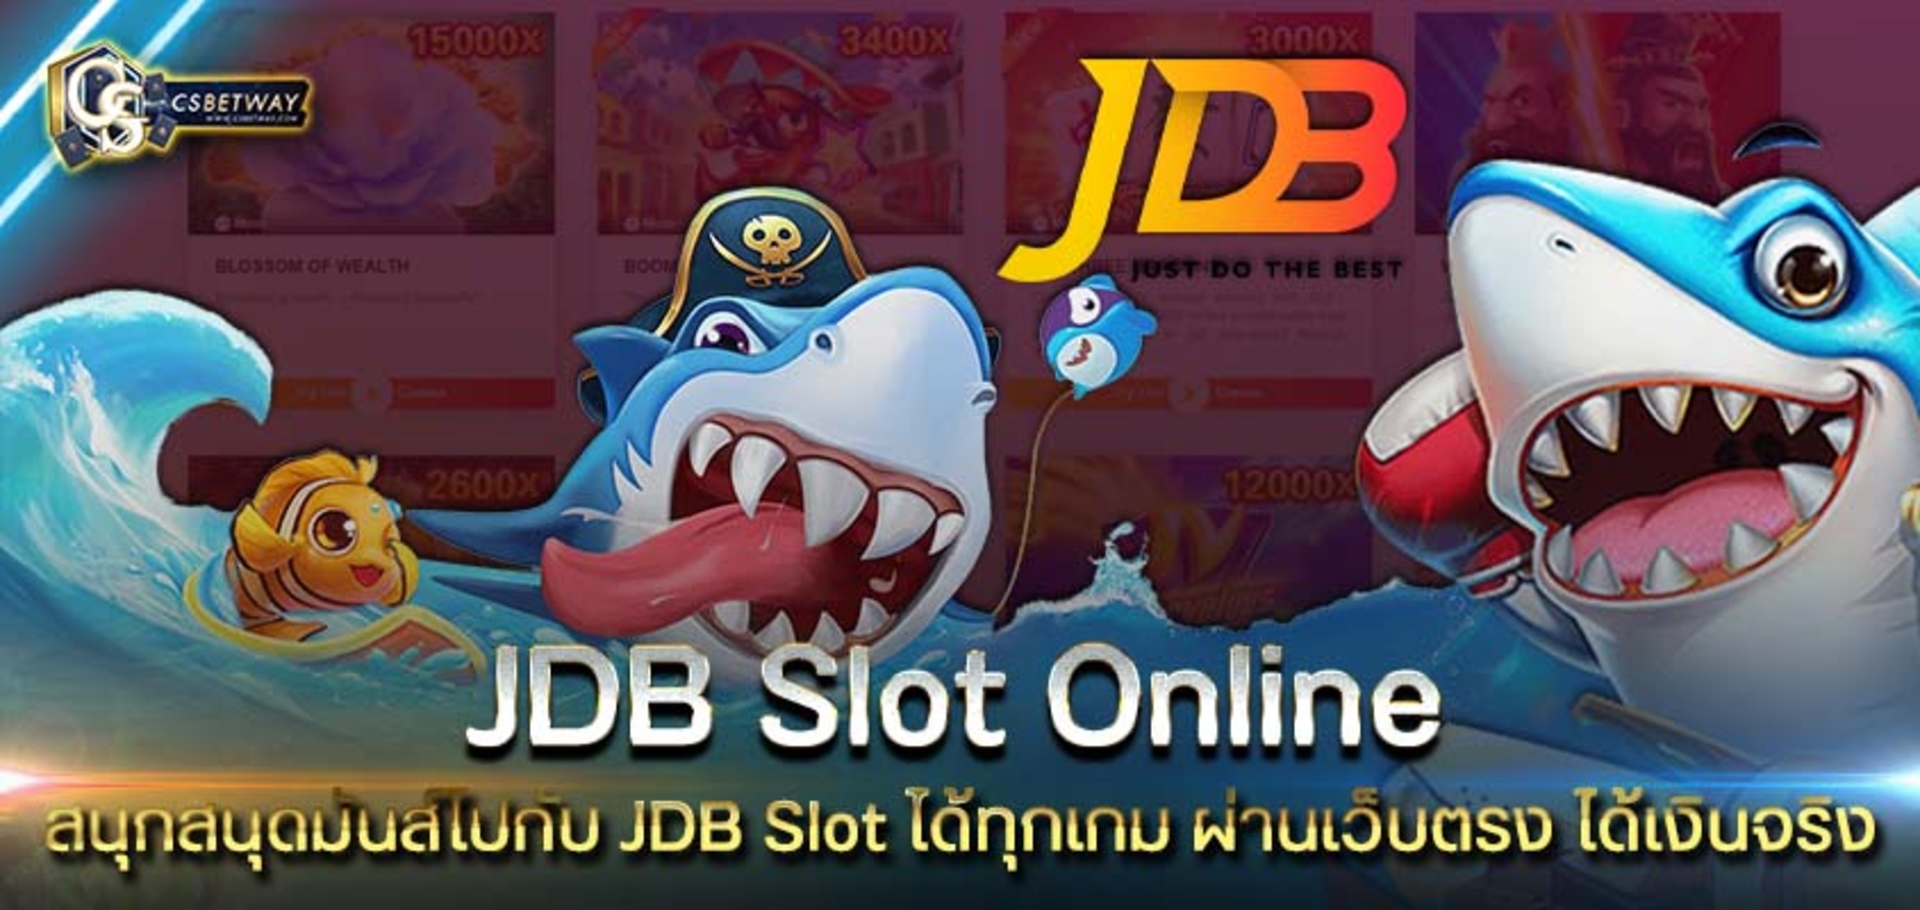 สนุกสนุดมันส์ไปกับ jdb slot online ได้ทุกเกม ผ่านเว็บตรง เล่นได้เงินจริง